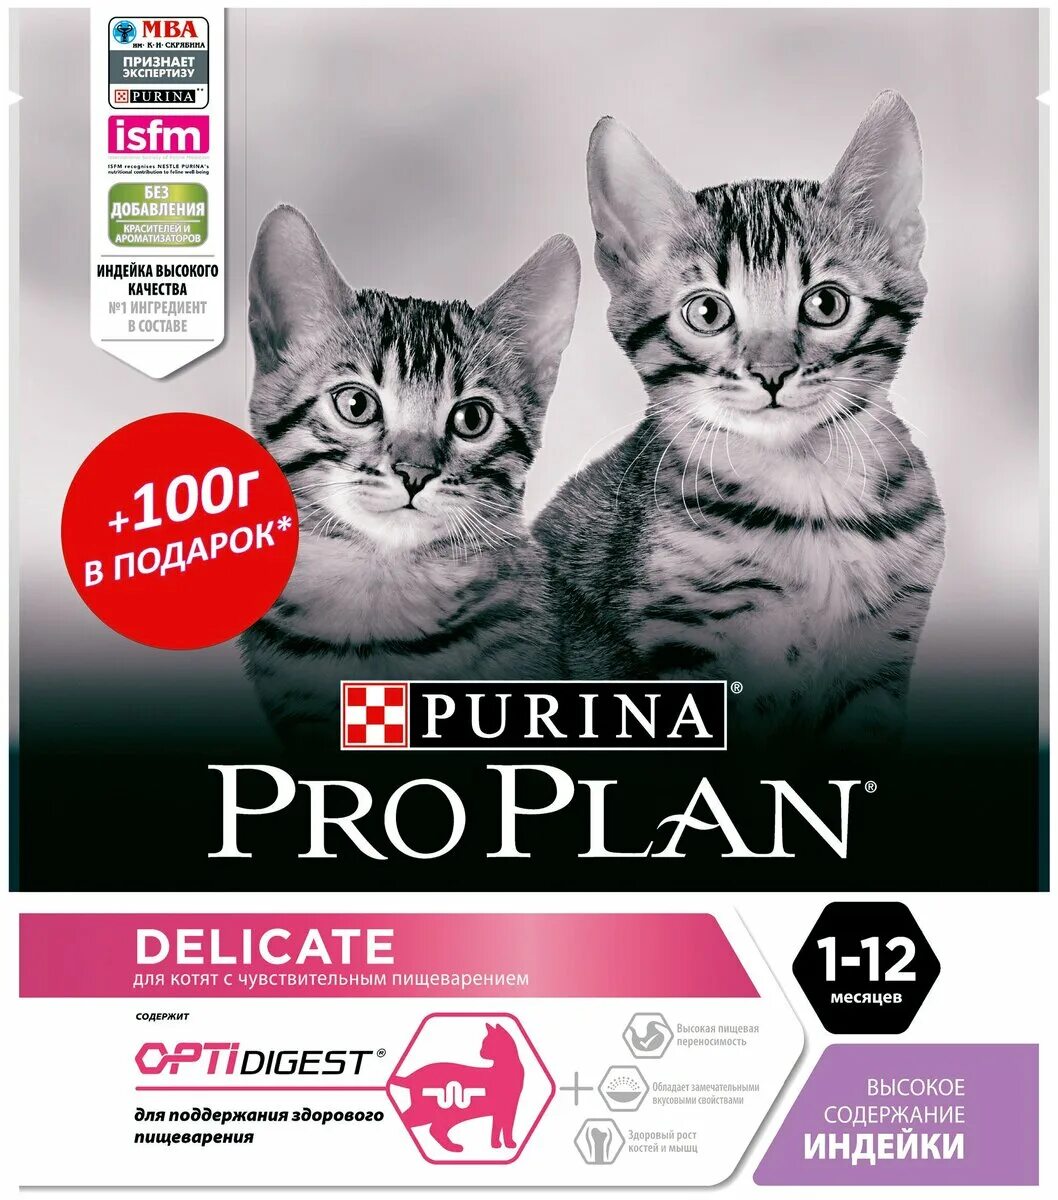 Корм для котят Purina Pro Plan delicate с индейкой 400 г. Про план Деликат с инлейклй доч котят. Пурина Проплан Деликат для котят. Корм Проплан для котят с индейкой.